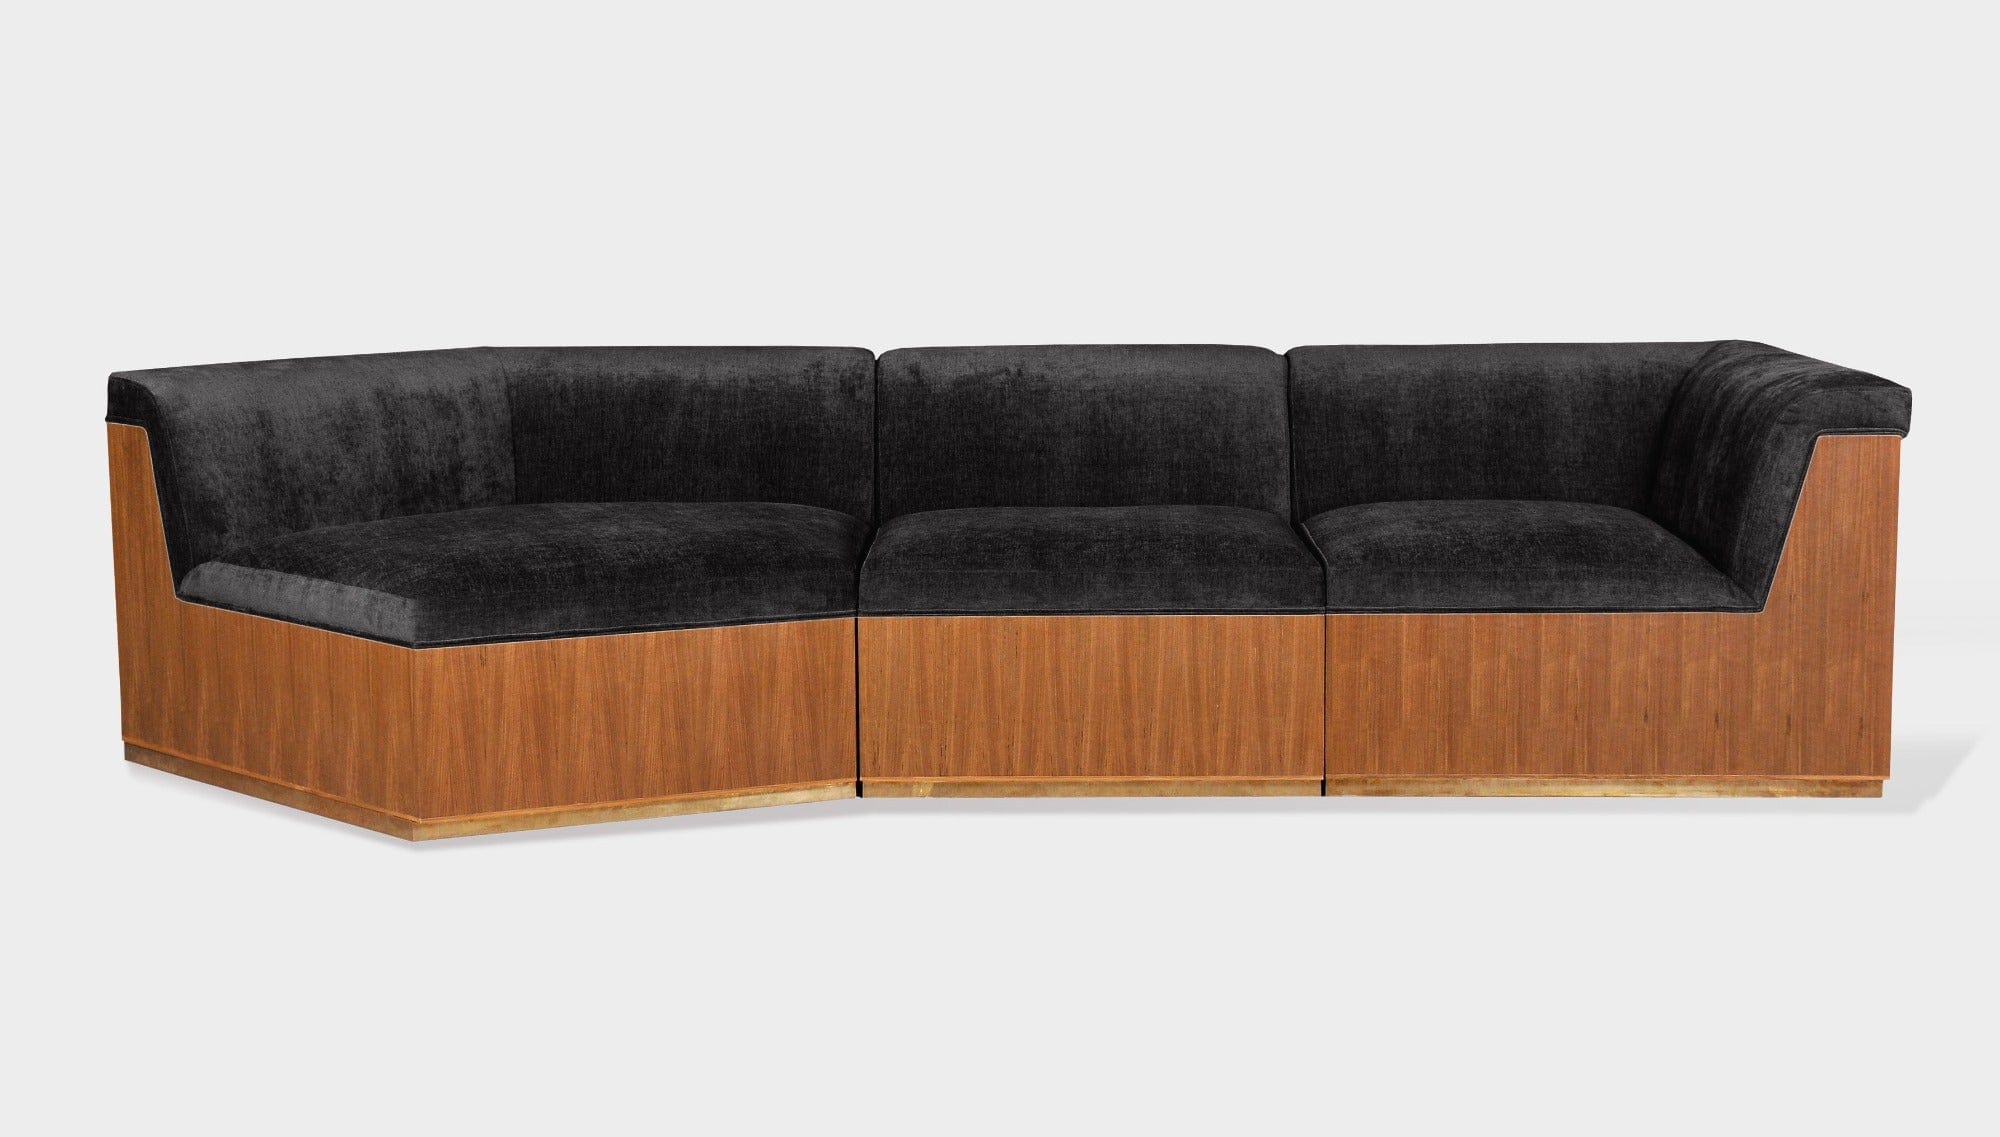 reddie-raw sofa 3 PIECE SOFA 316W x 122D x 73H (43H seat) *cm / Fabric~Velma Black / Wood Veneer~Teak Dylan Sofa